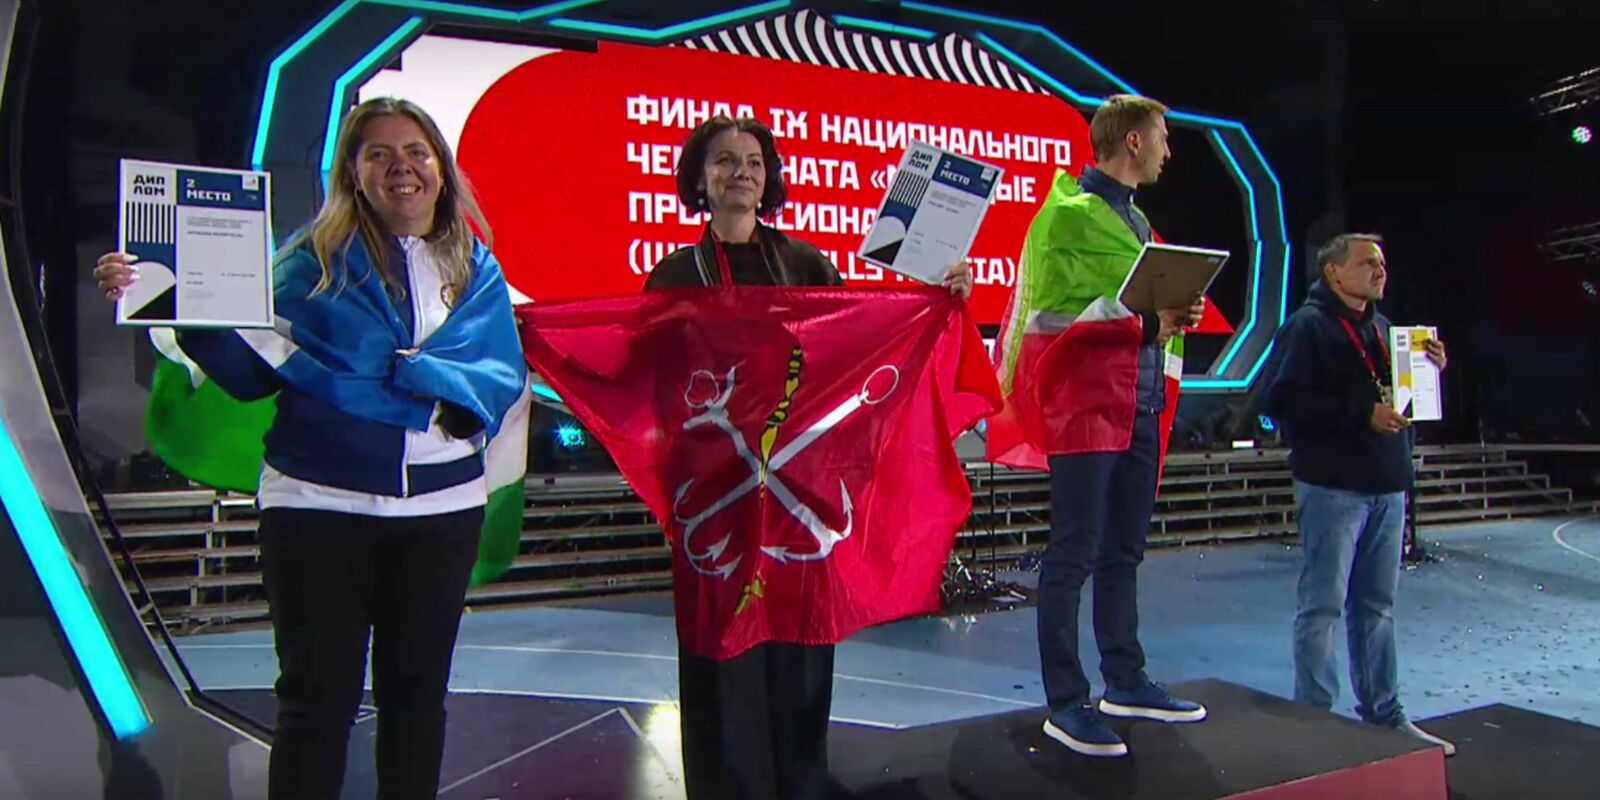 Команда из Башкирии заняла второе место в общемедальном зачёте нацфинала WorldSkills Russia - 2021